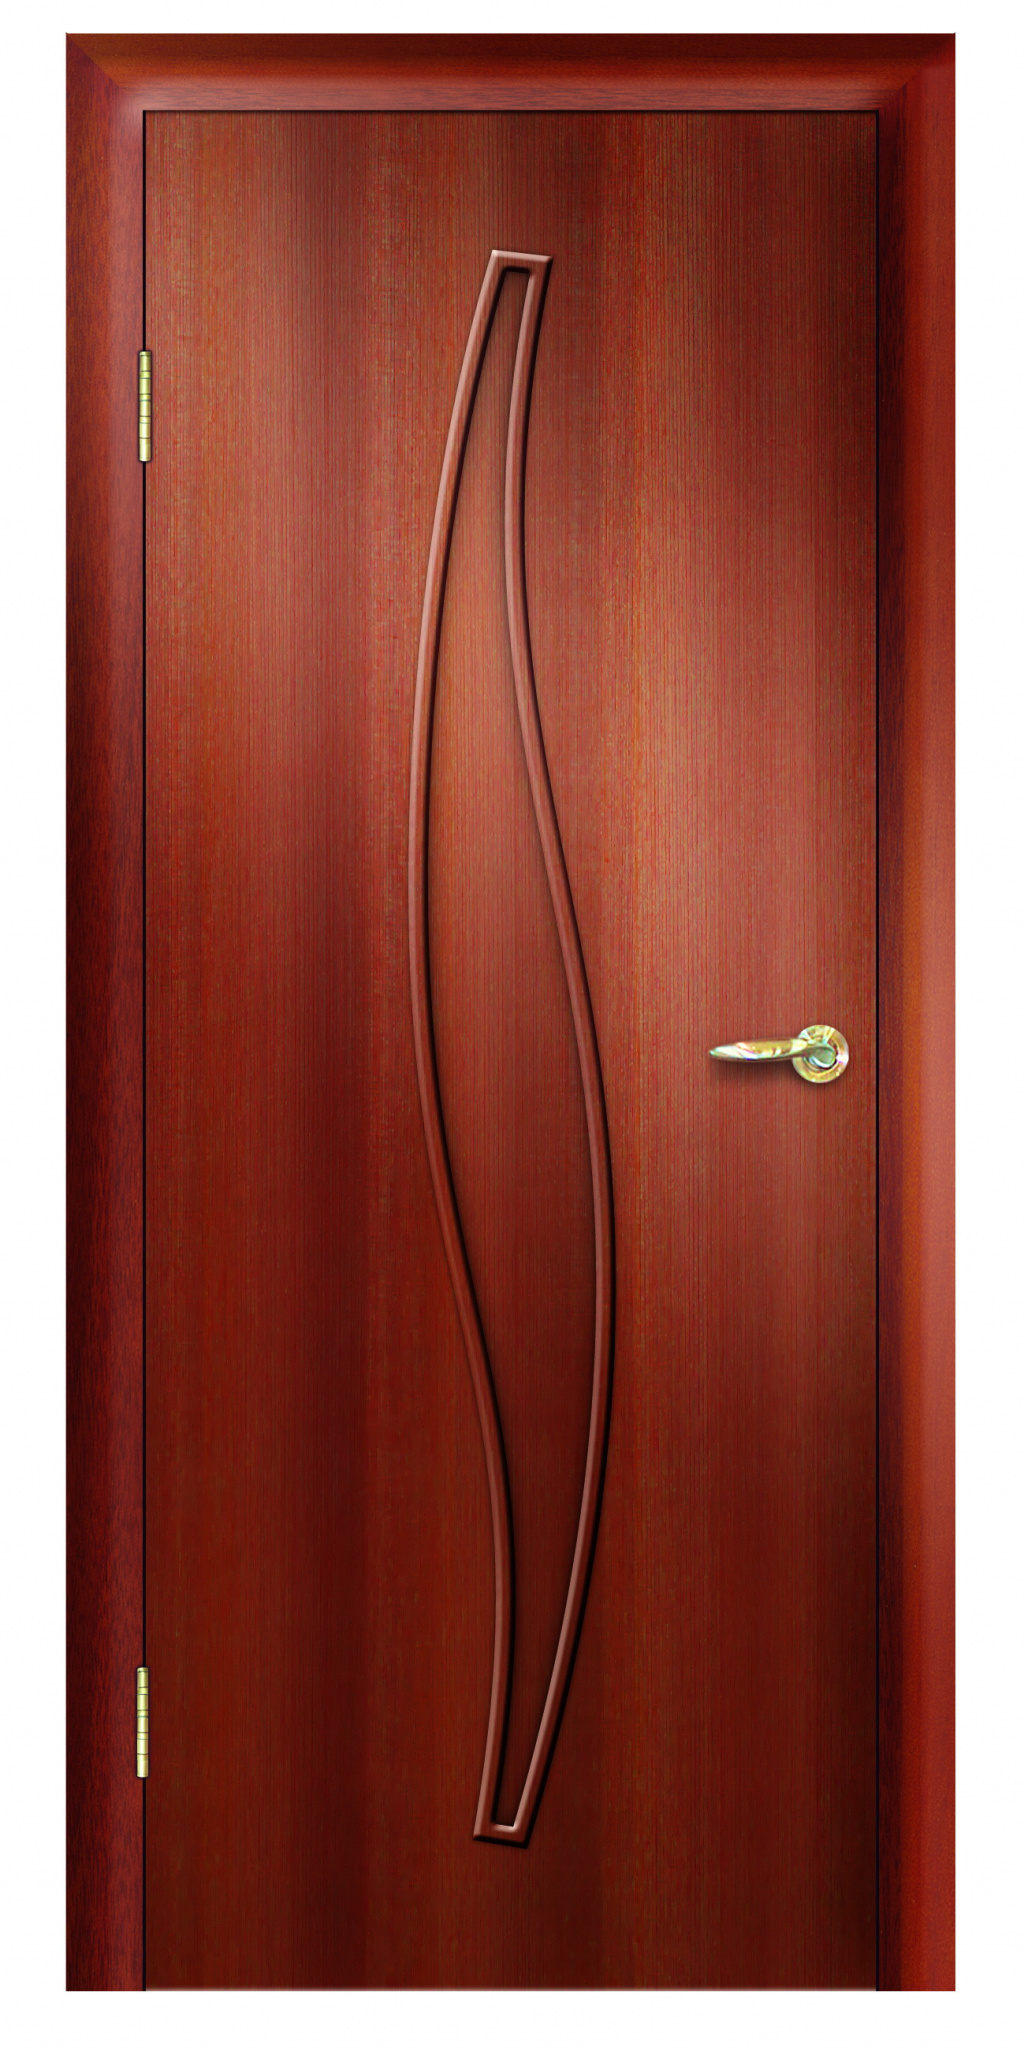 Дверная Линия Межкомнатная дверь ПГ-23, арт. 15724 - фото №1